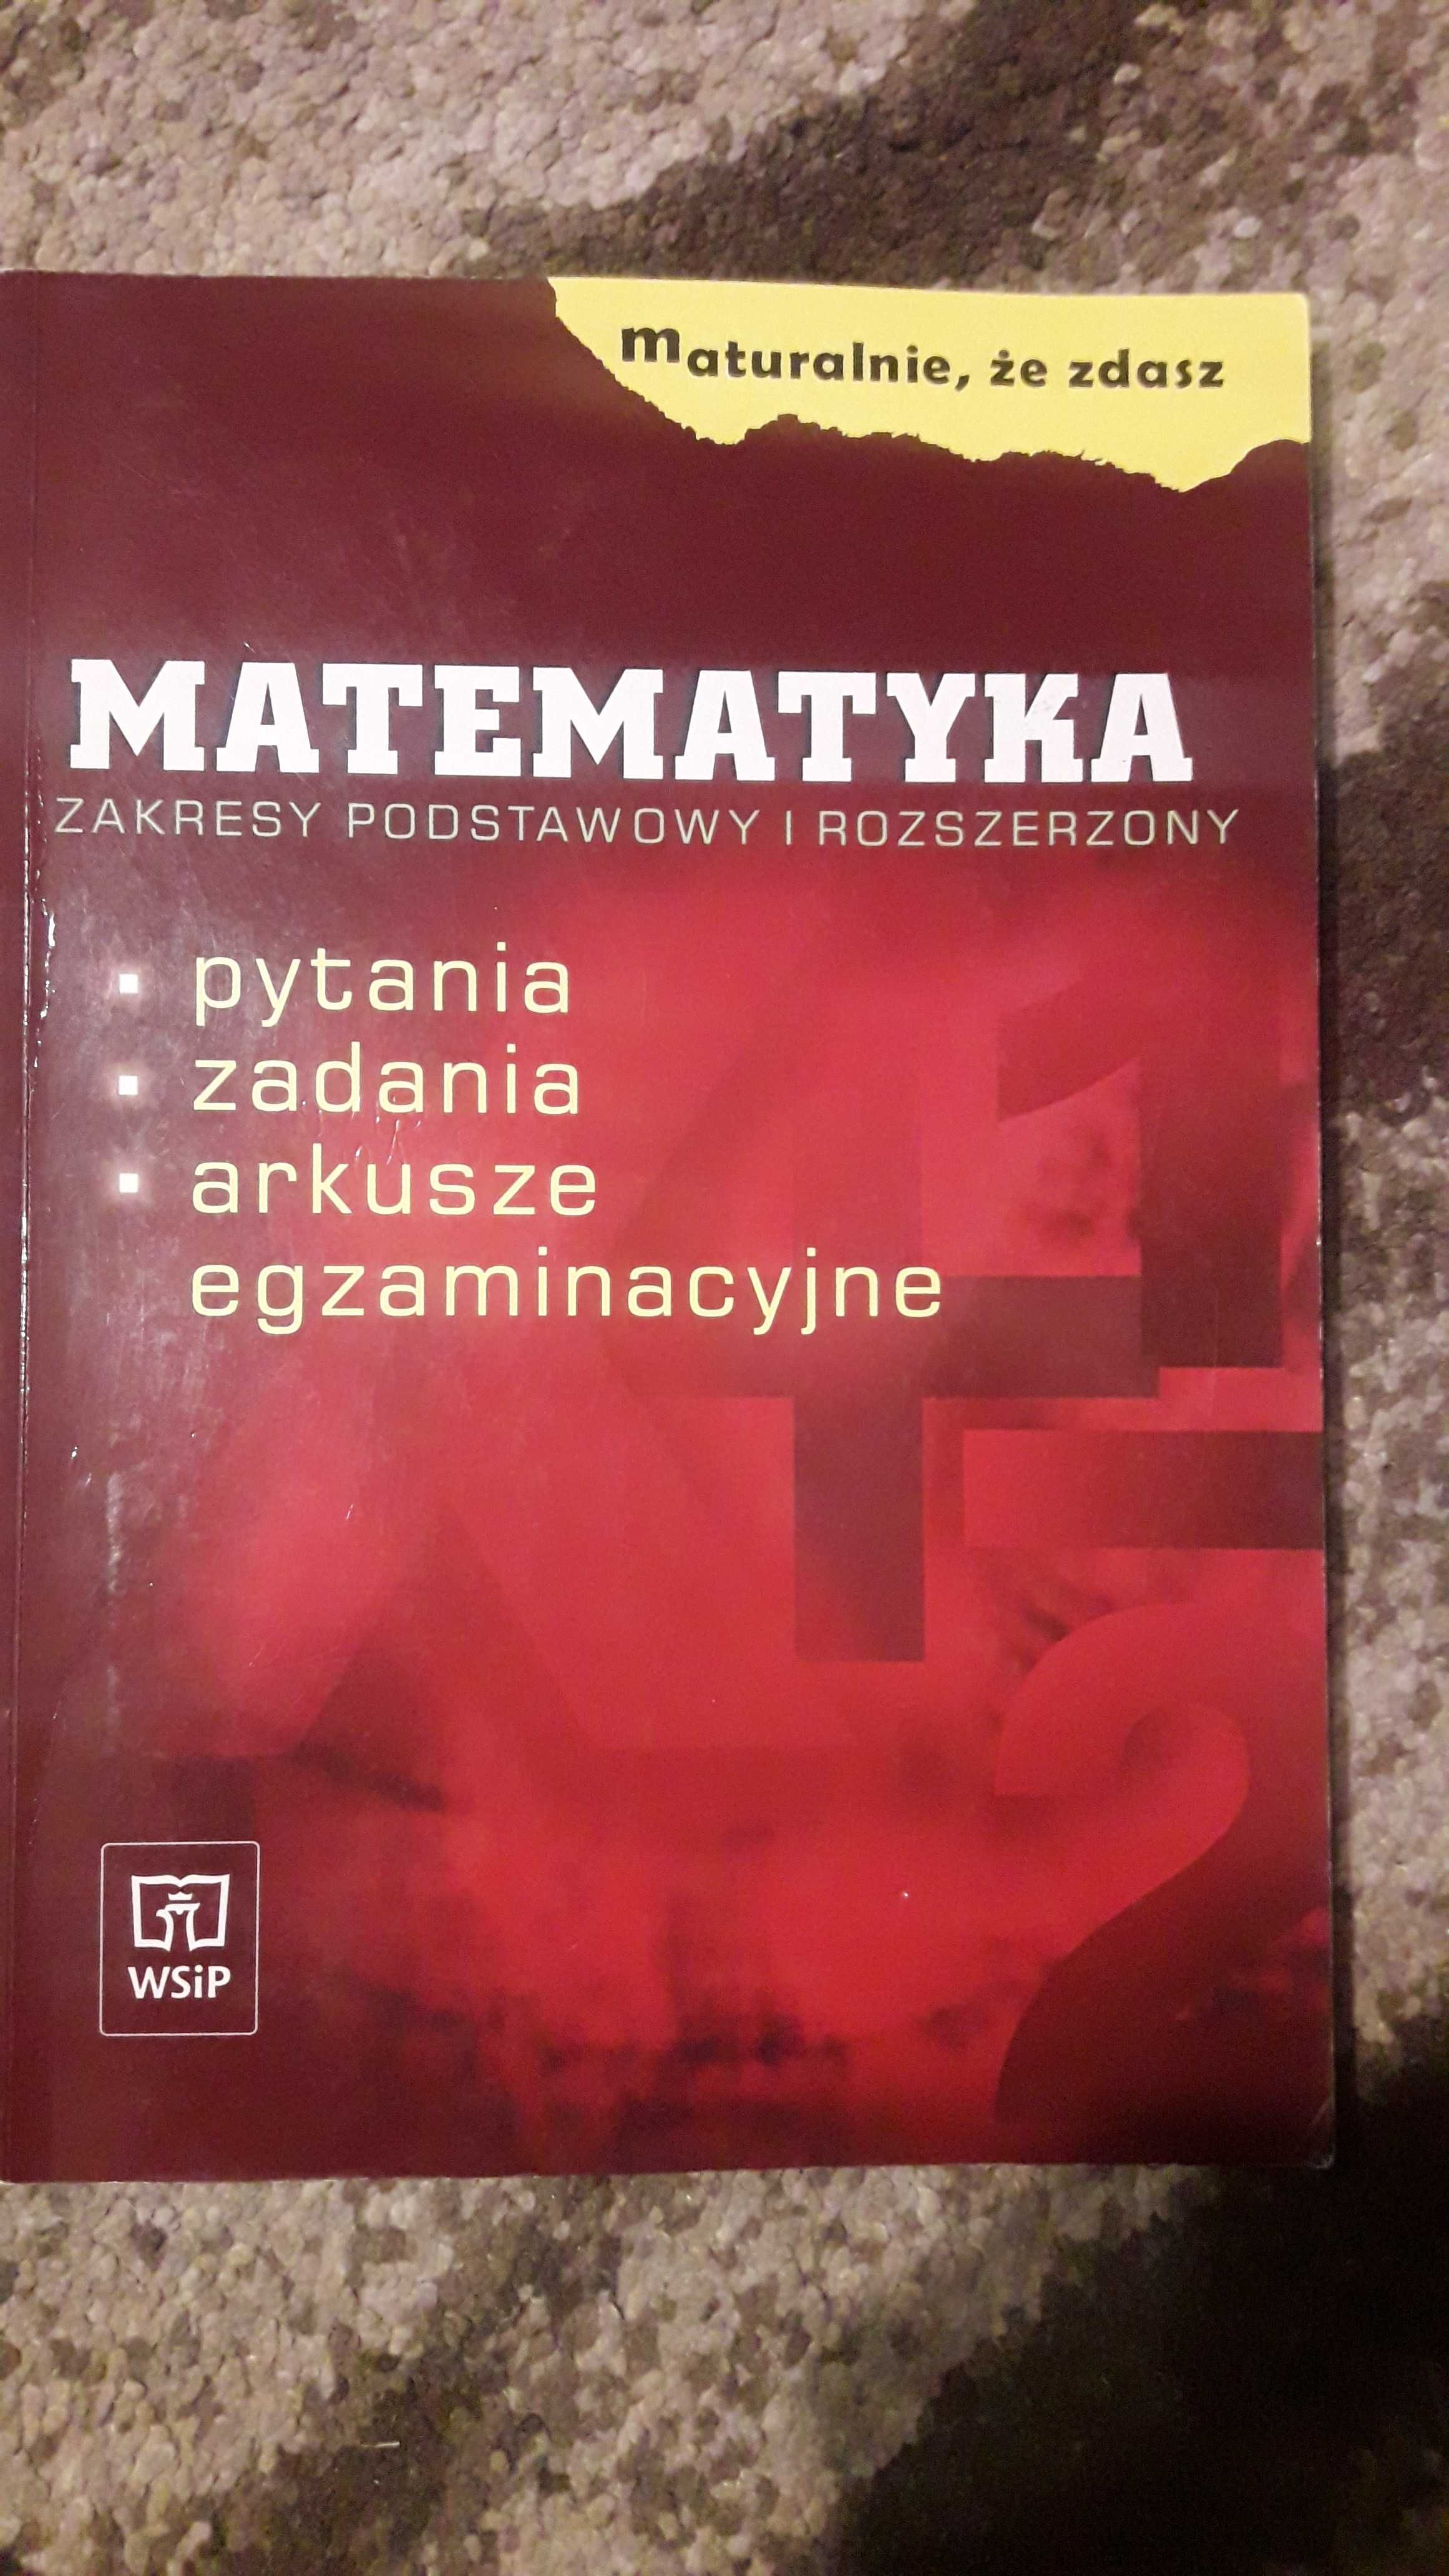 Matematyka - maturalnie że zdasz - wydanie z 2004 roku